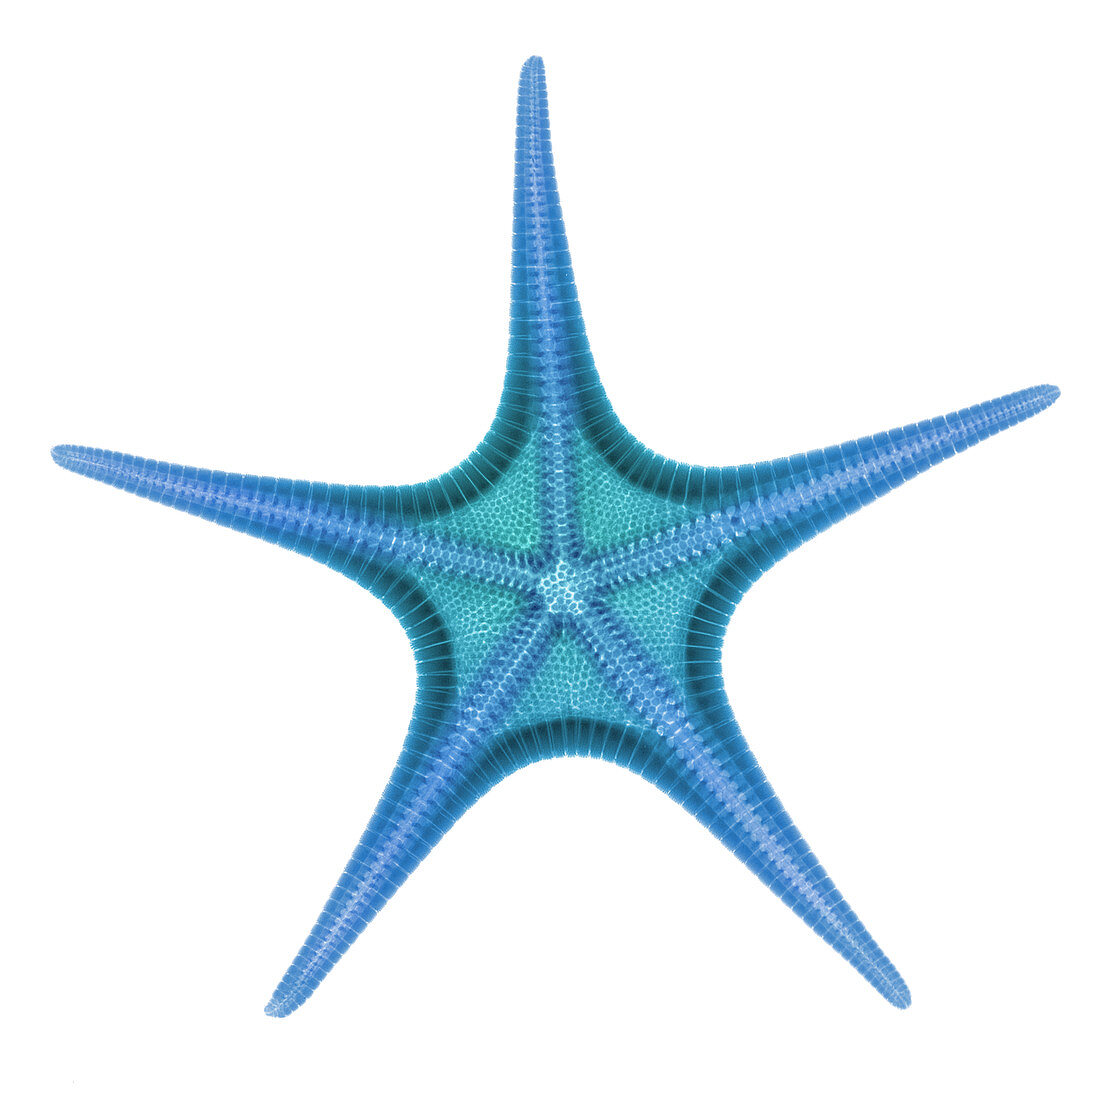 X-ray of Starfish